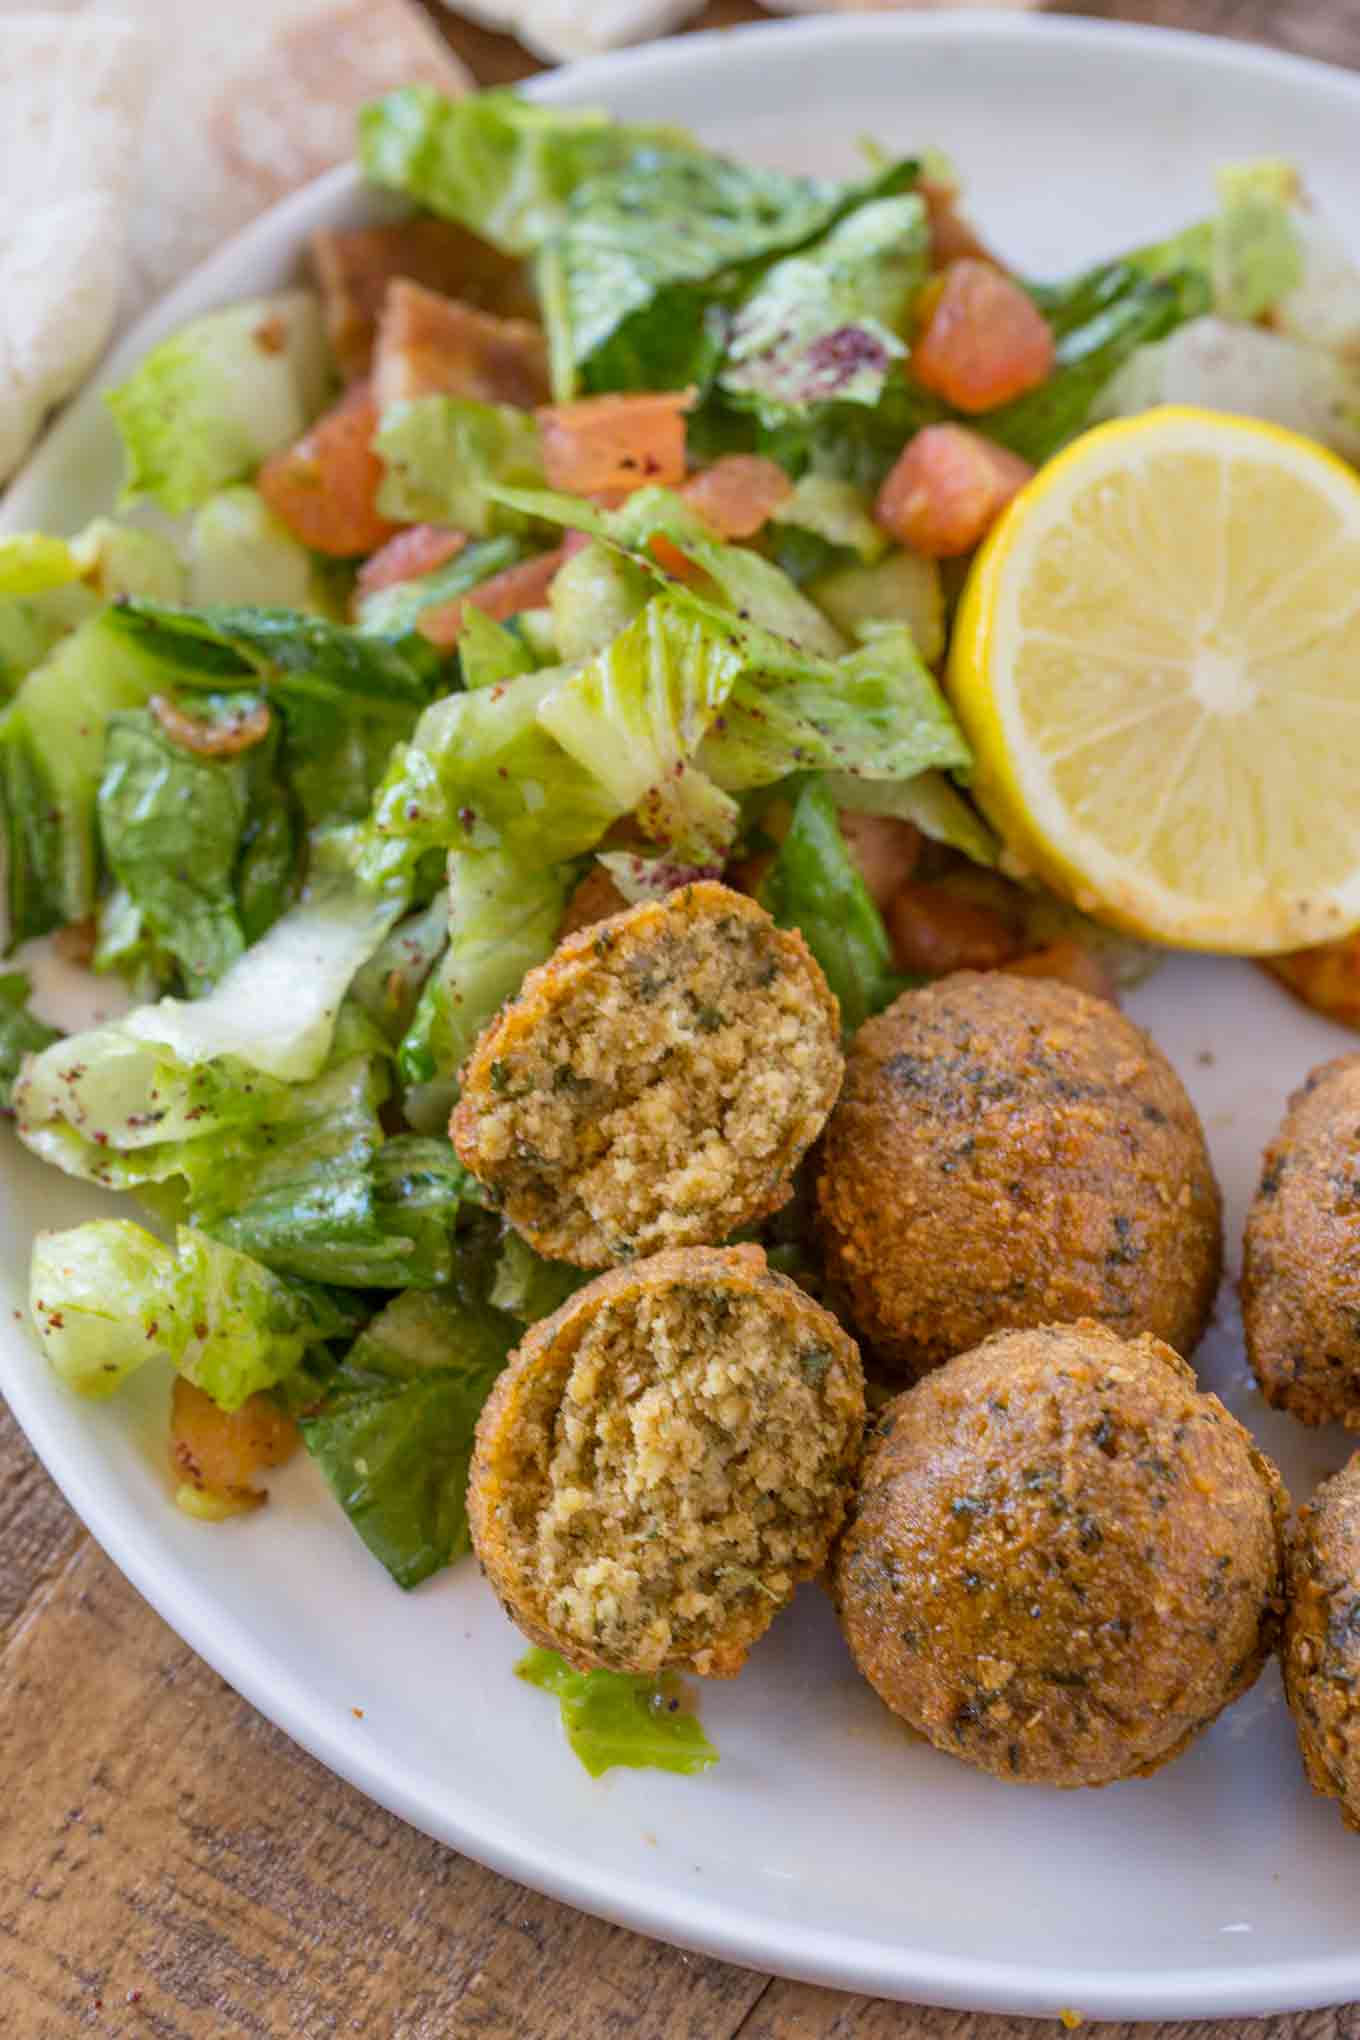 falafel ingredients make this falafel recipe vegan